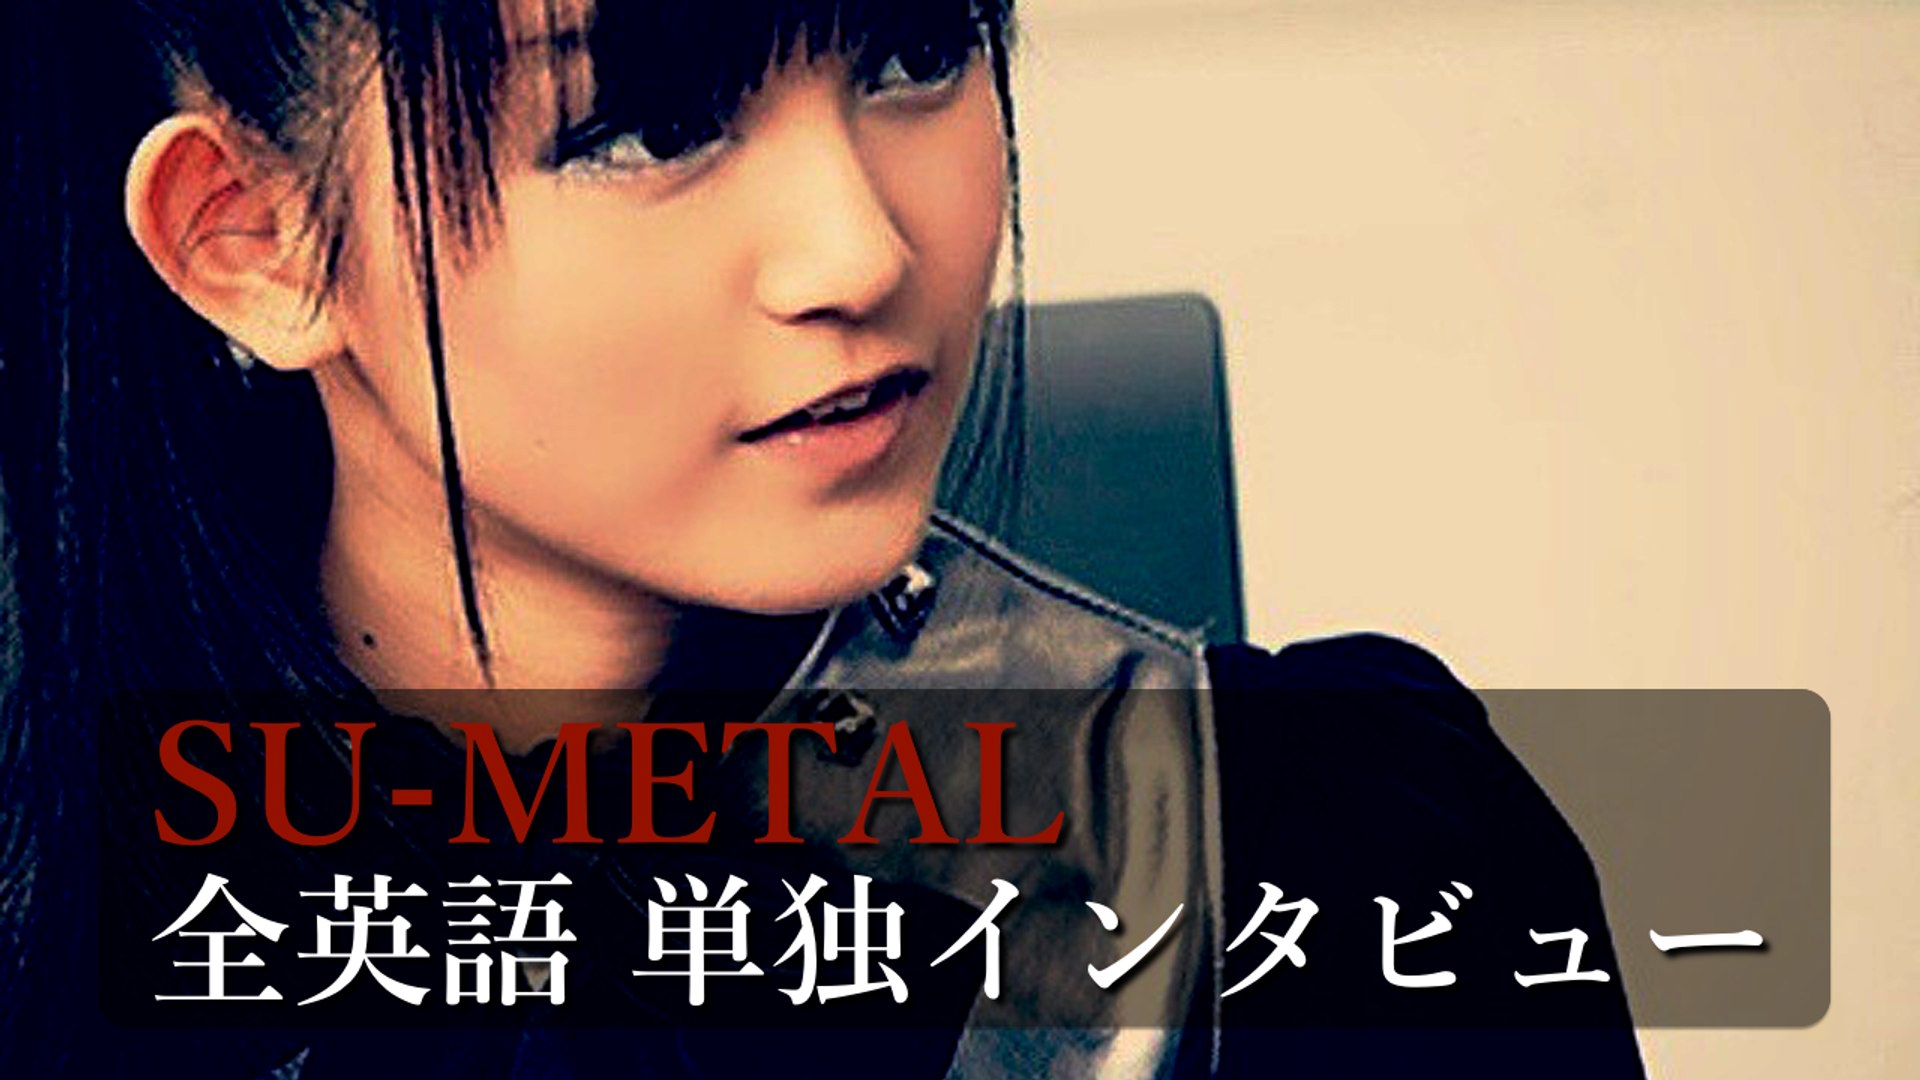 世界の歌姫へ Babymetal Su Metal 全英語 単独インタビュー 翻訳あり 動画 Dailymotion